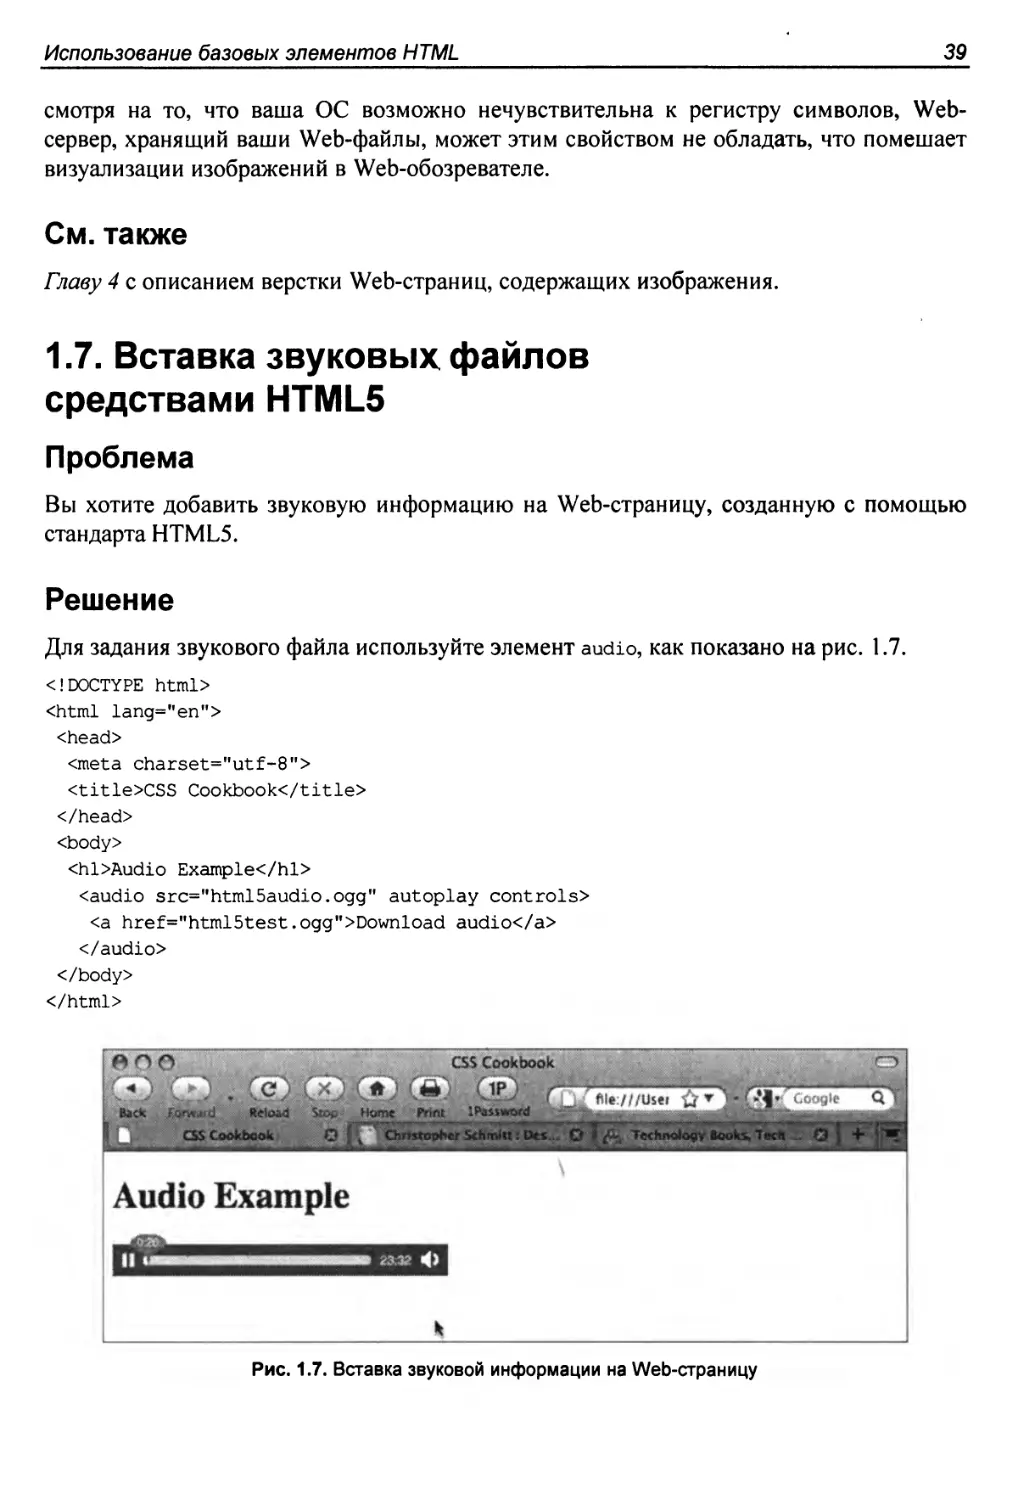 1.7. Вставка звуковых файлов средствами HTML5